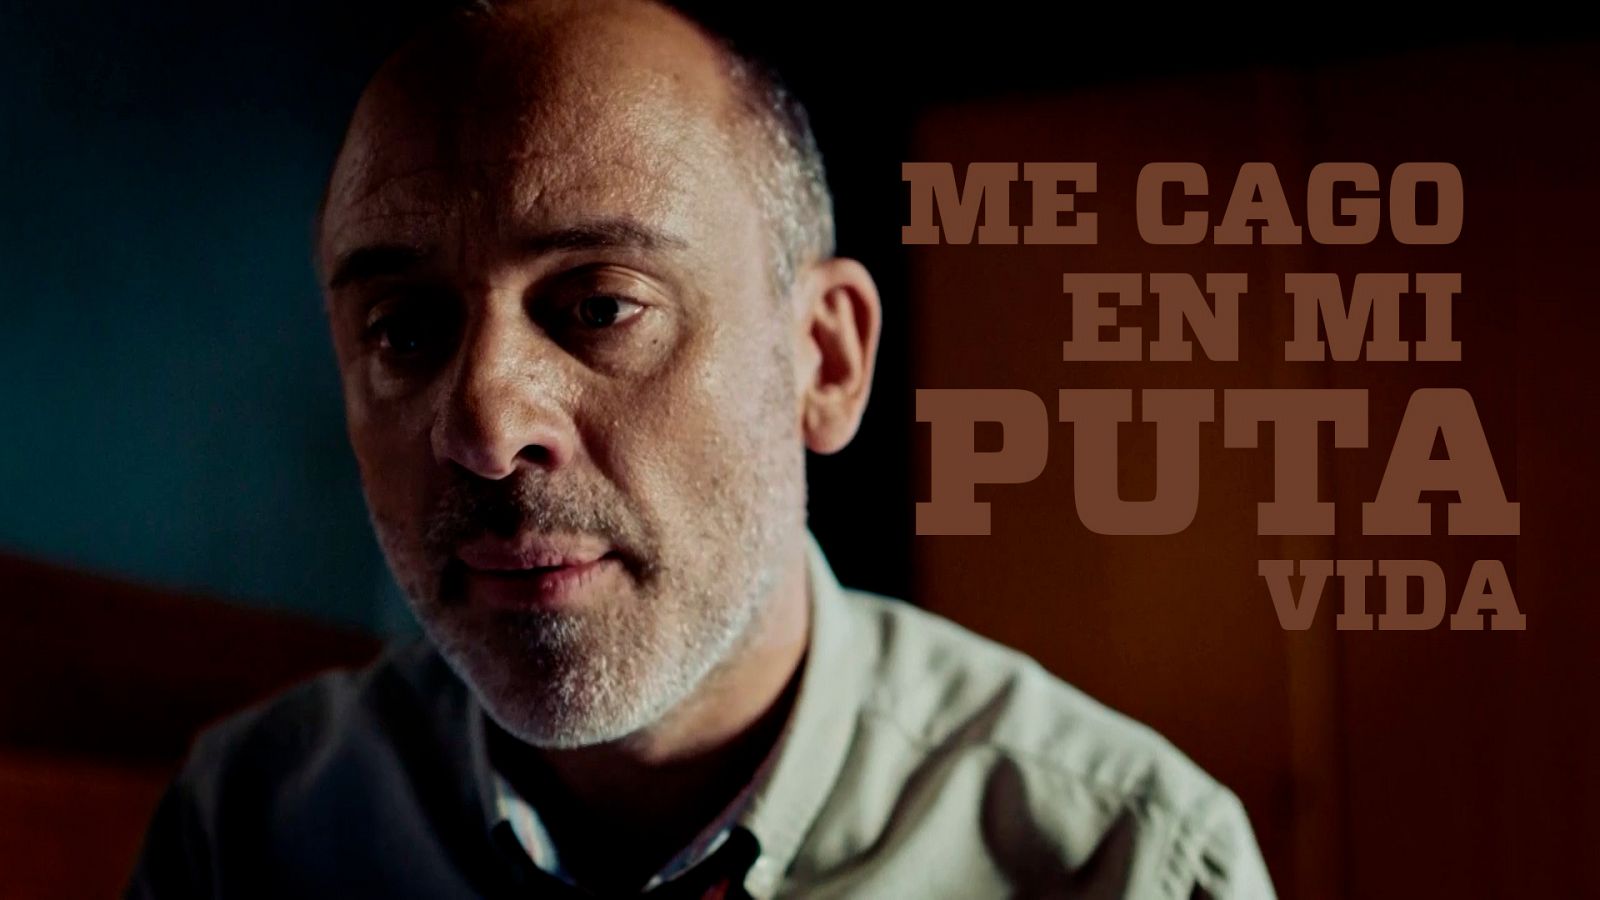 Estoy vivo - Todas las veces que Javier Gutiérrez ha dicho "Me caguen mi puta vida" en 'Estoy vivo' - RTVE.es